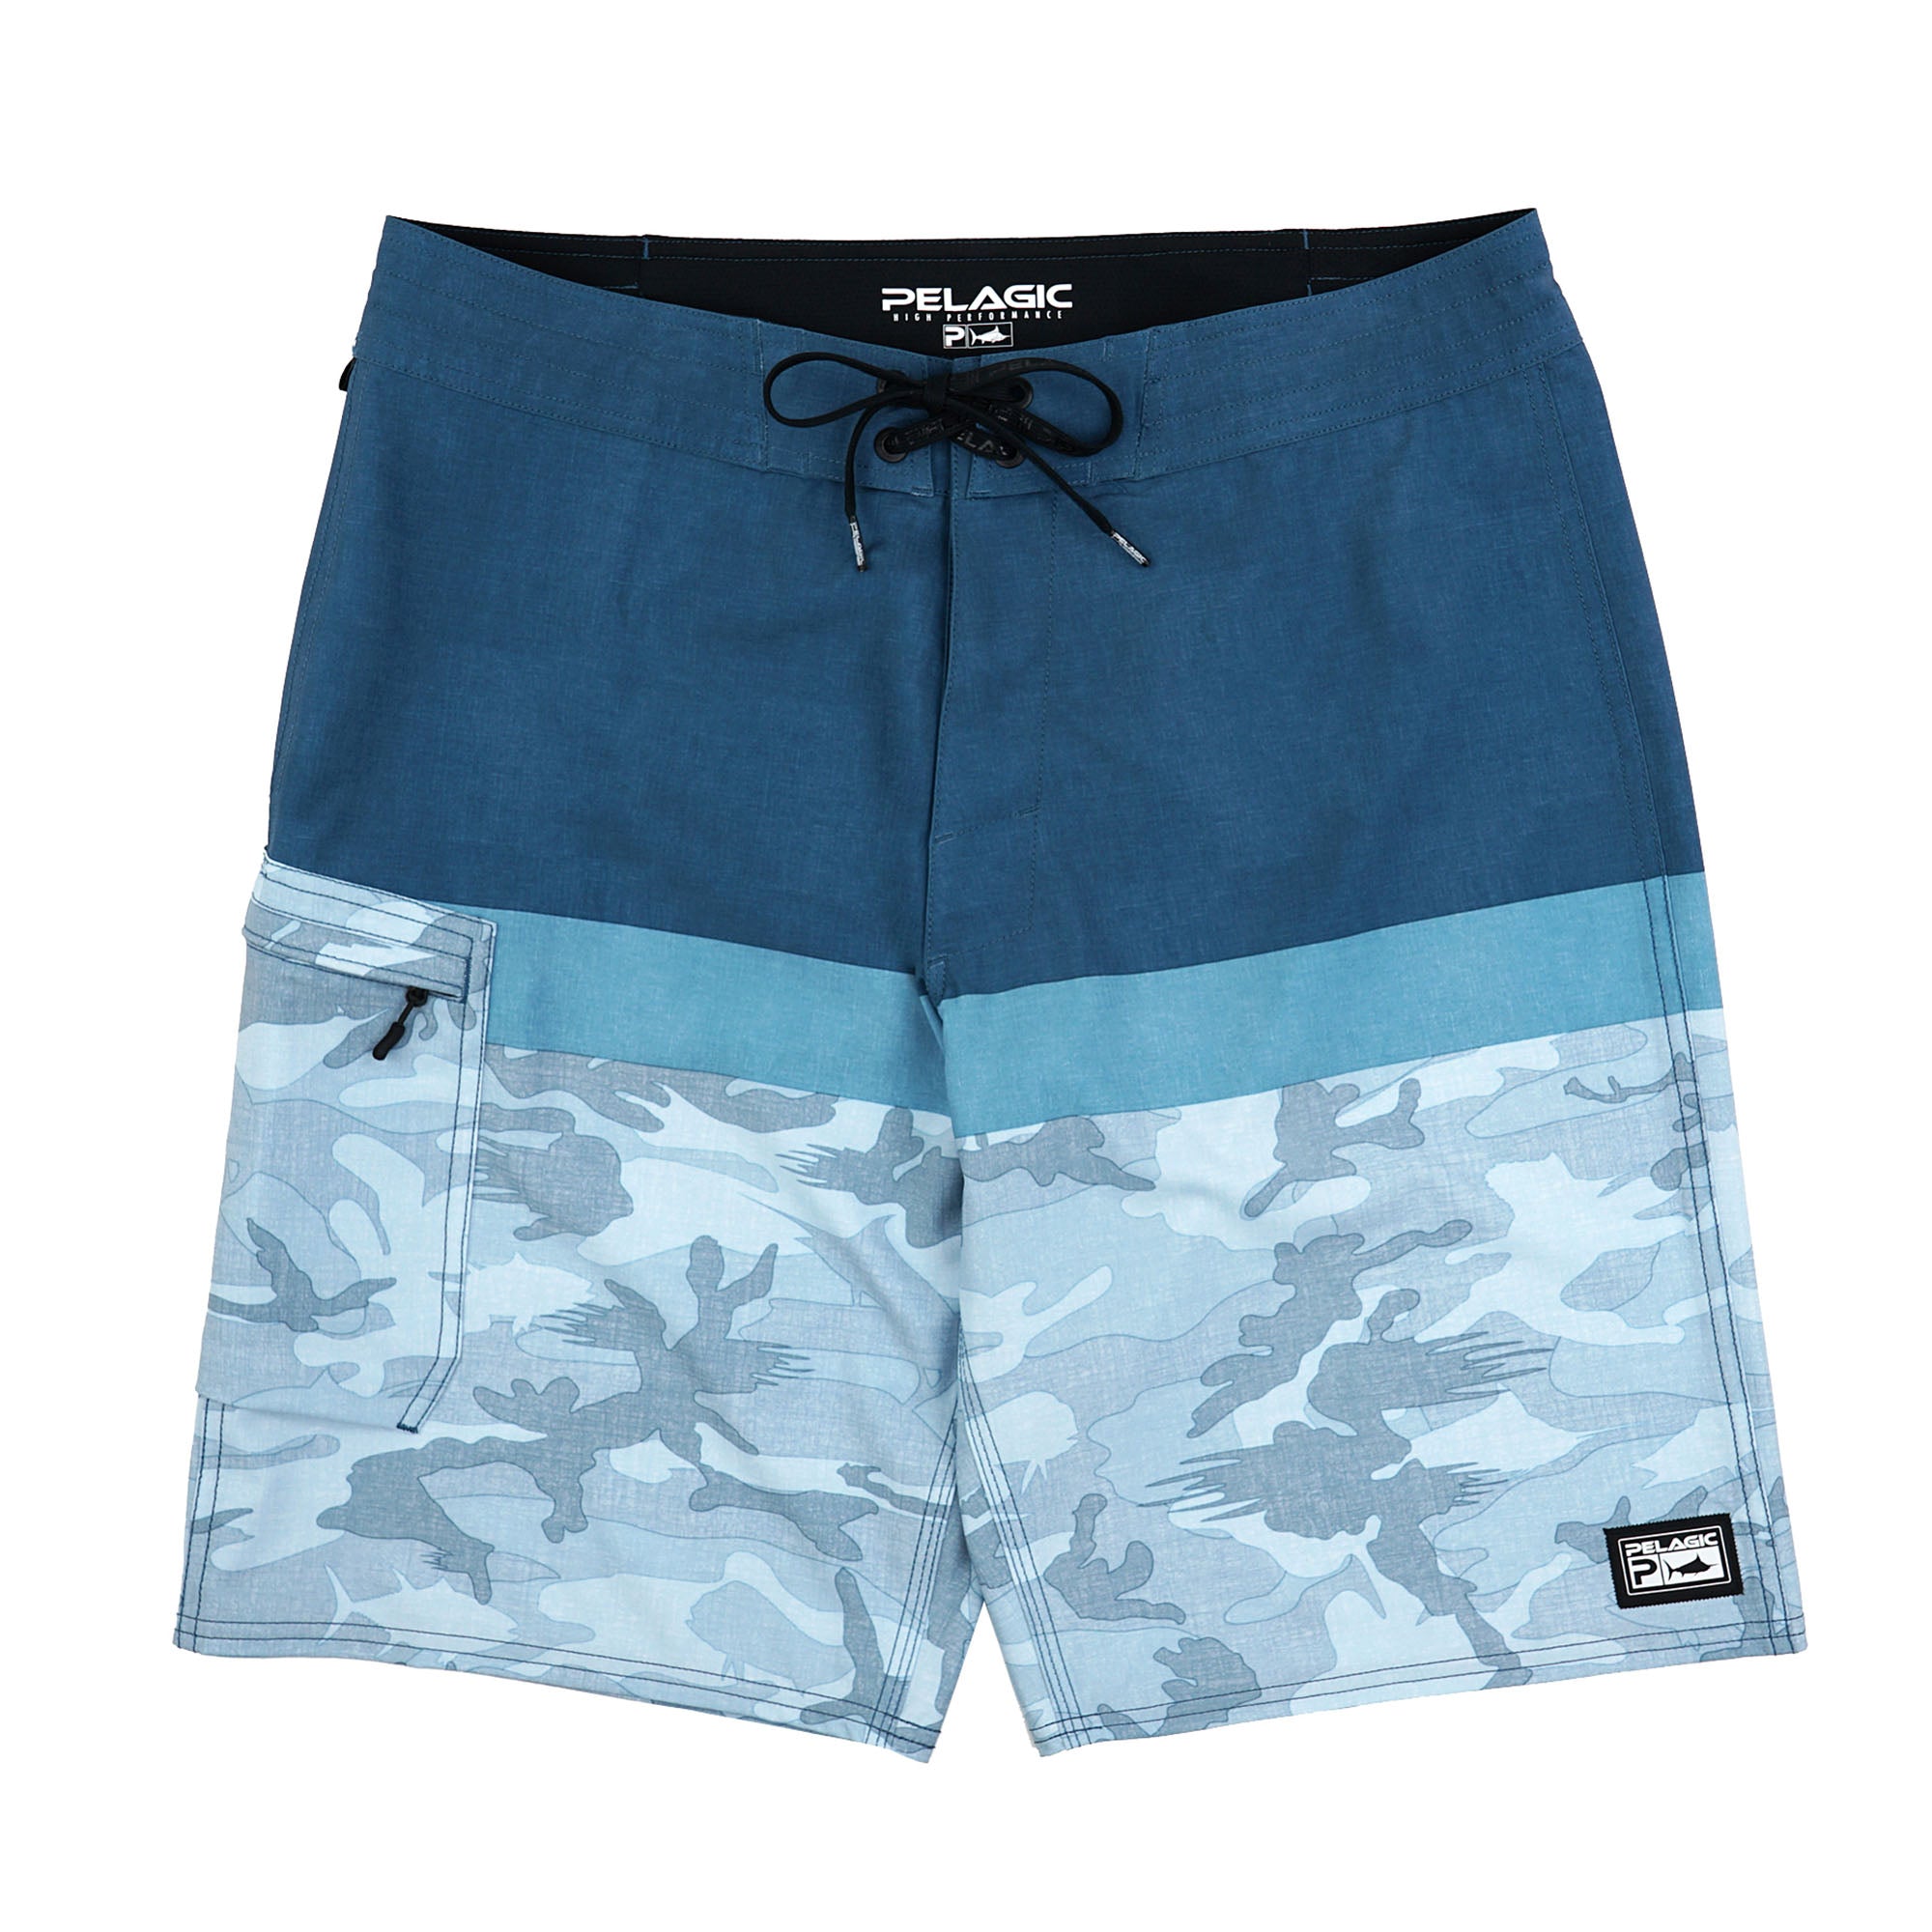 Pelagic Blue Water Fishing Shorts - Fish Camo Slate - 38